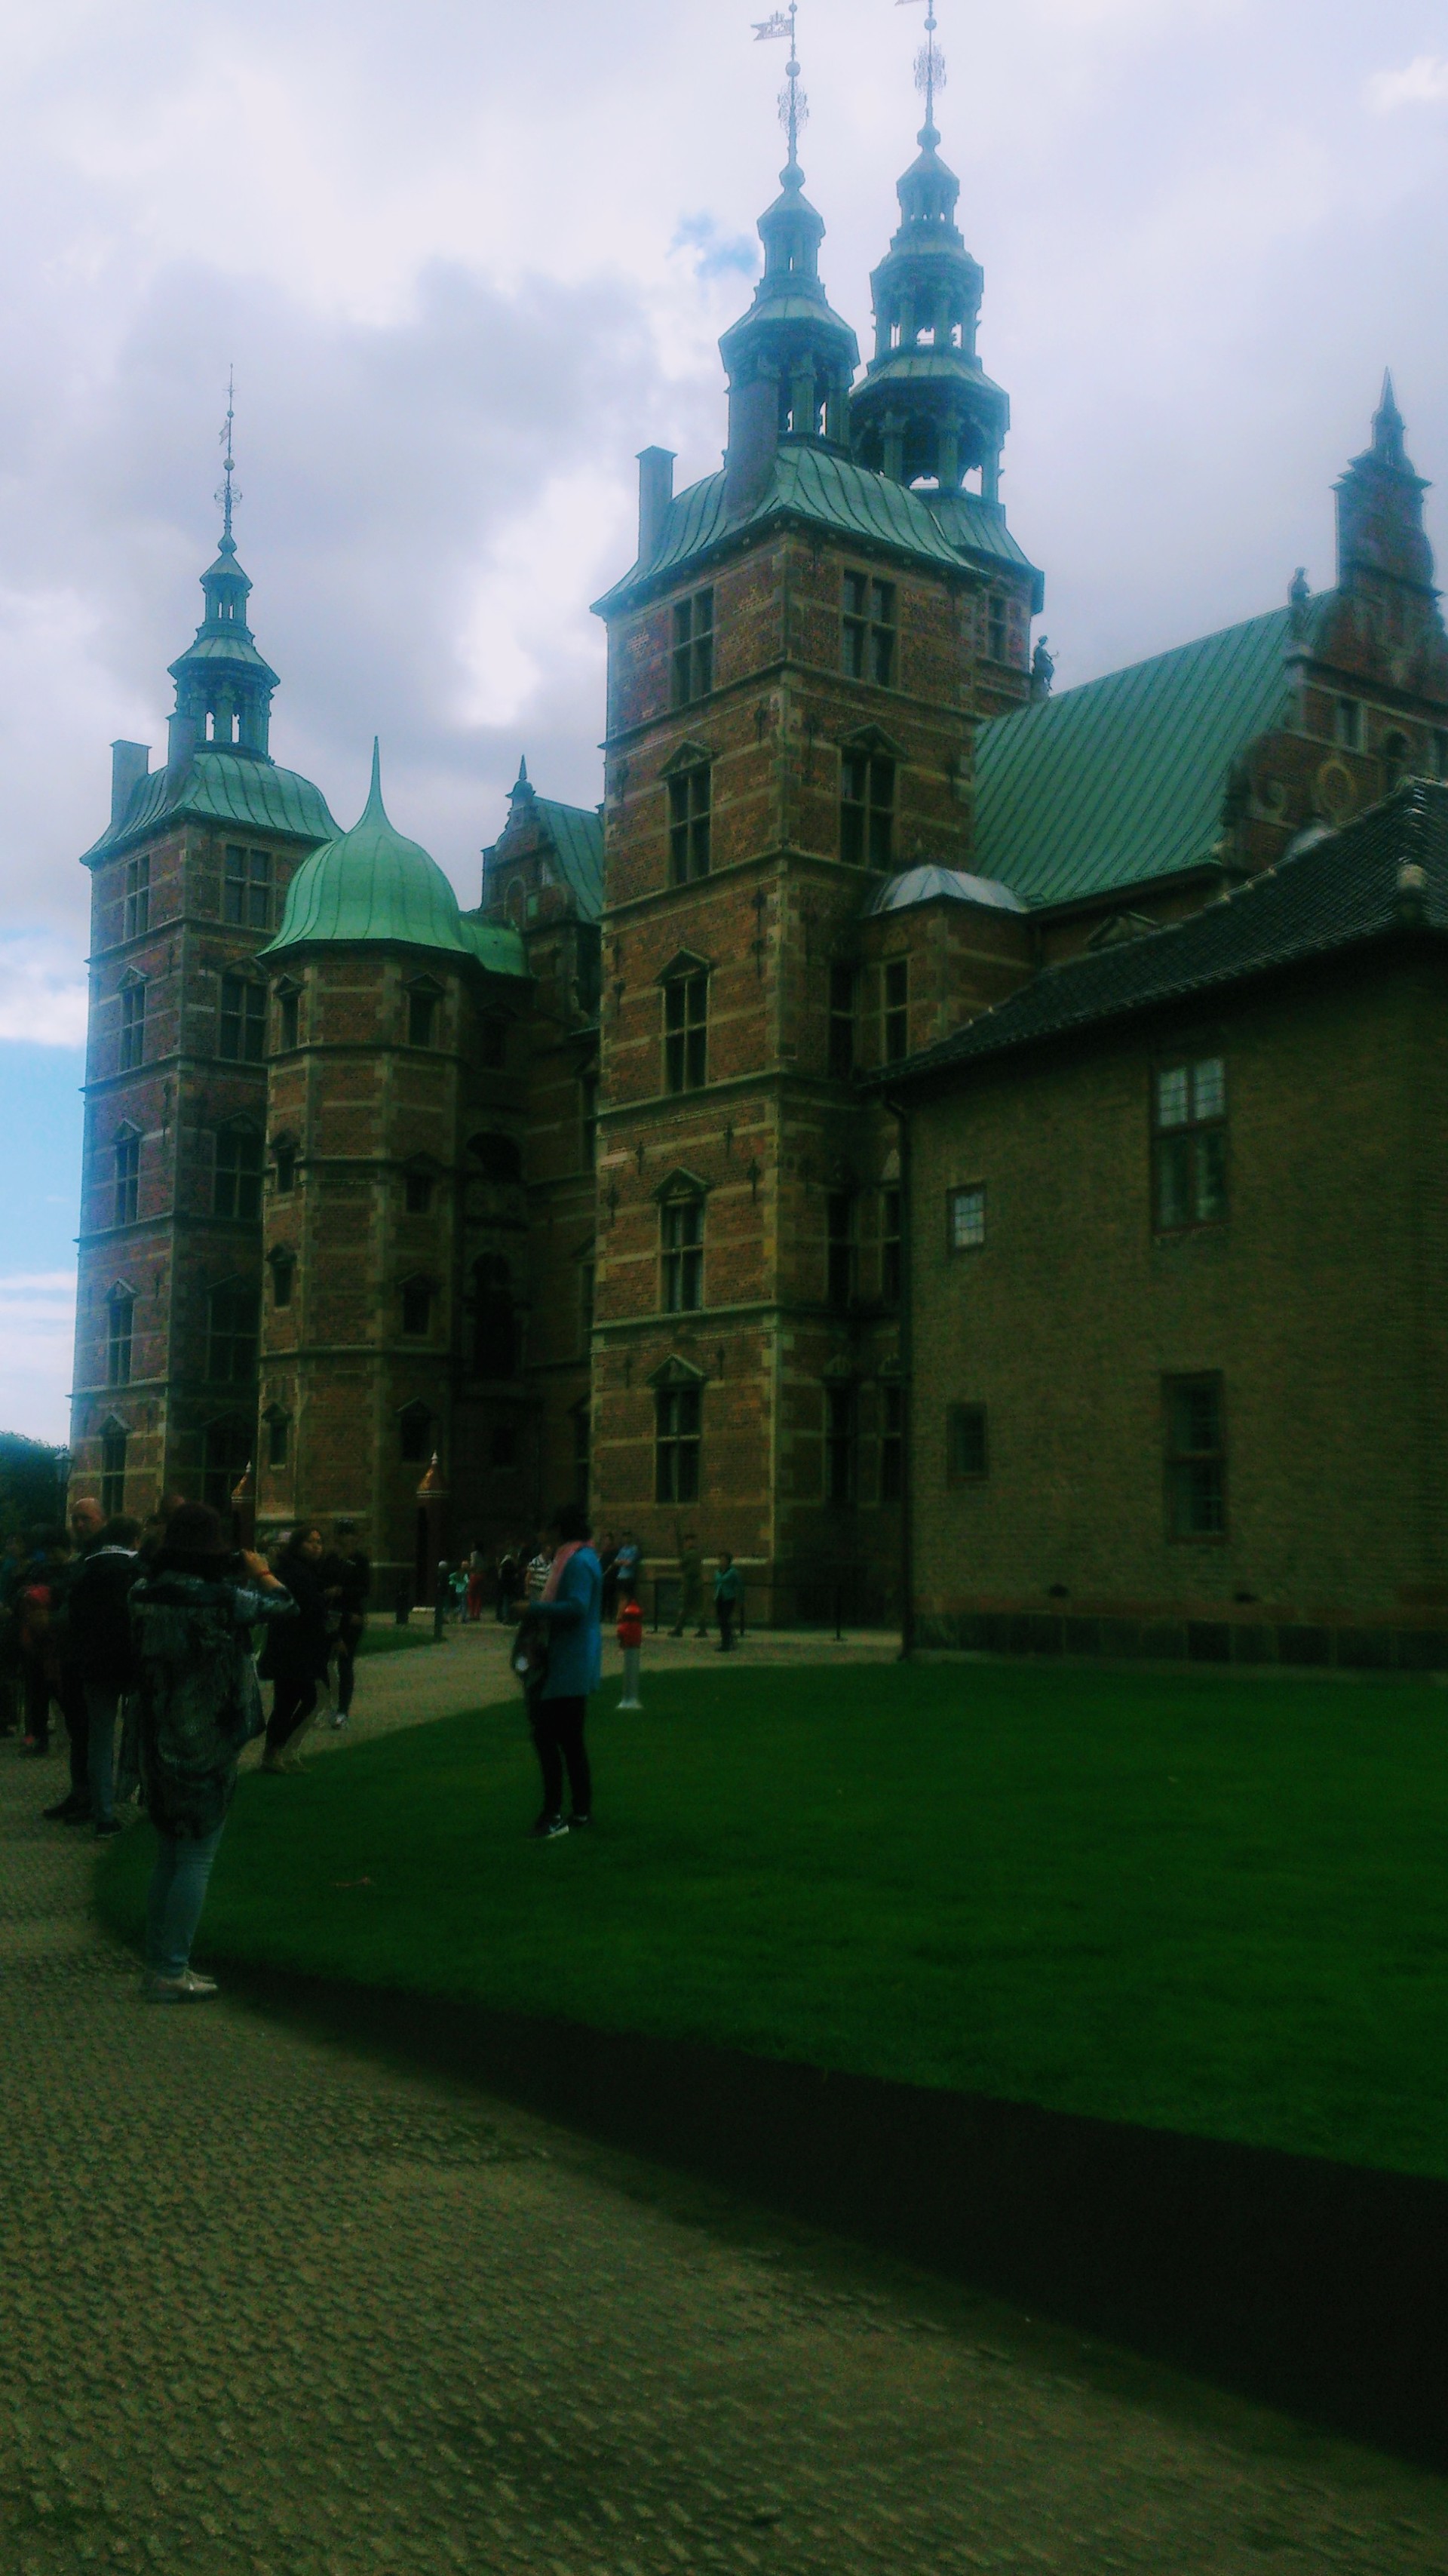 Visiting Rosenborg Castle Erasmus Blog Copenhagen Denmark [ 3415 x 1920 Pixel ]